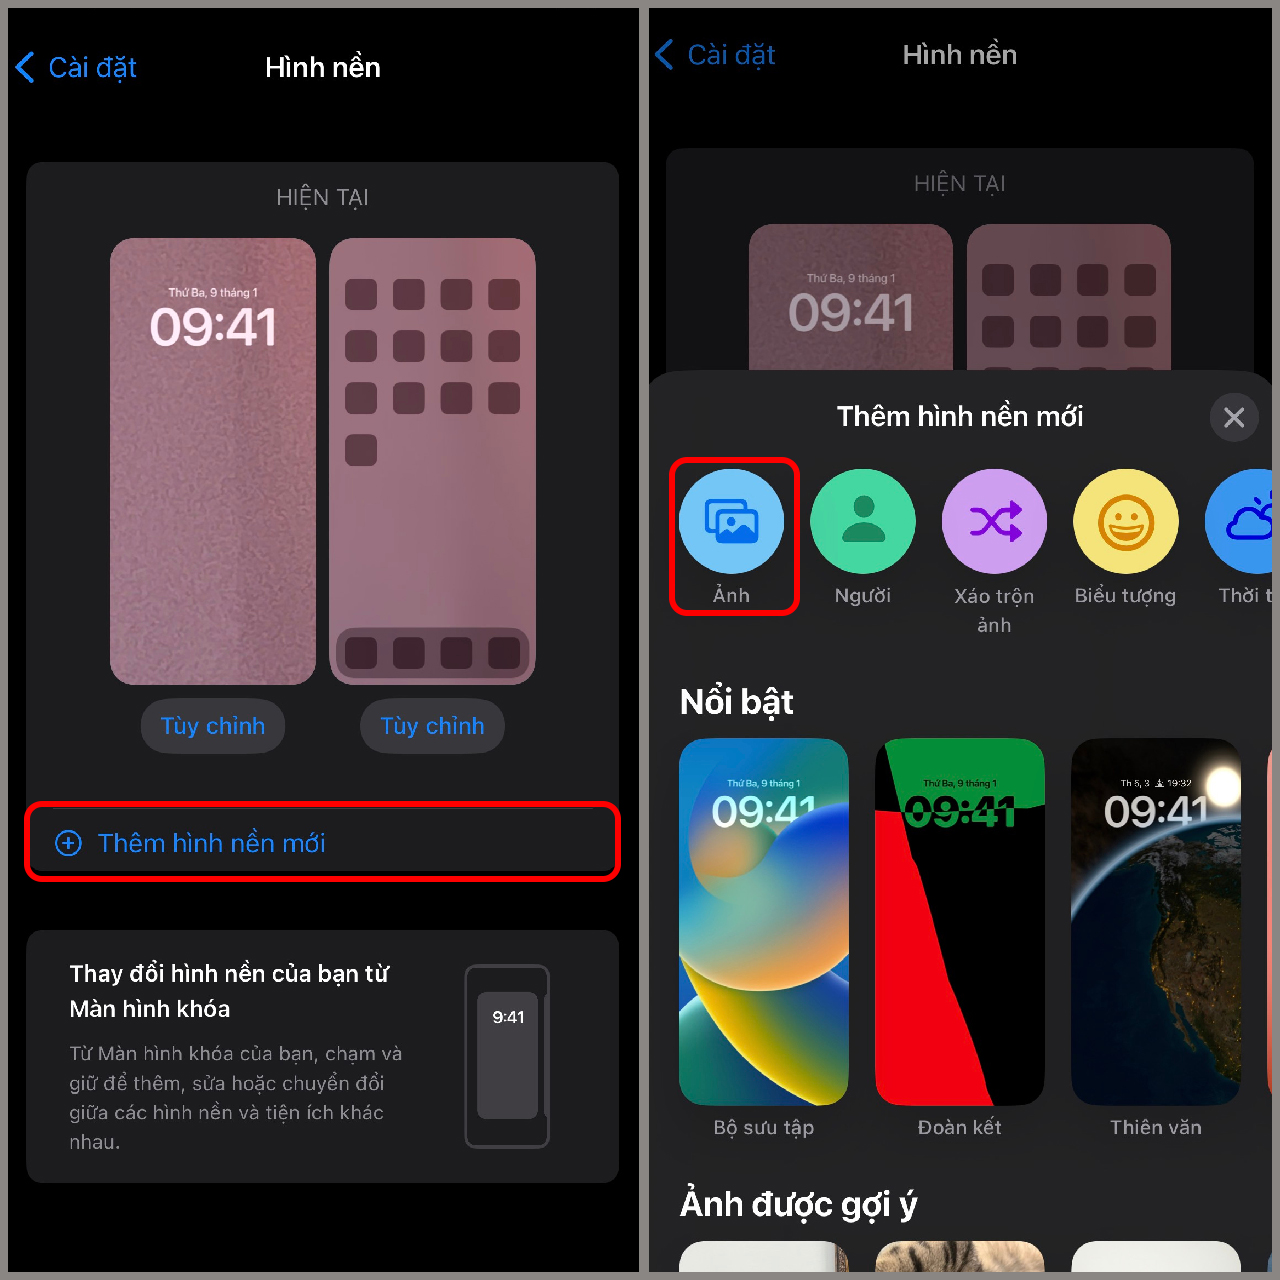 Những chiếc điện thoại iPhone luôn được biết đến với quả táo đặc trưng trên logo. Và giờ đây, hãy cùng tô điểm cho chiếc điện thoại của bạn với bộ sưu tập hình nền quả táo iPhone để tạo nên màn hình độc đáo và tinh tế hơn bao giờ hết.